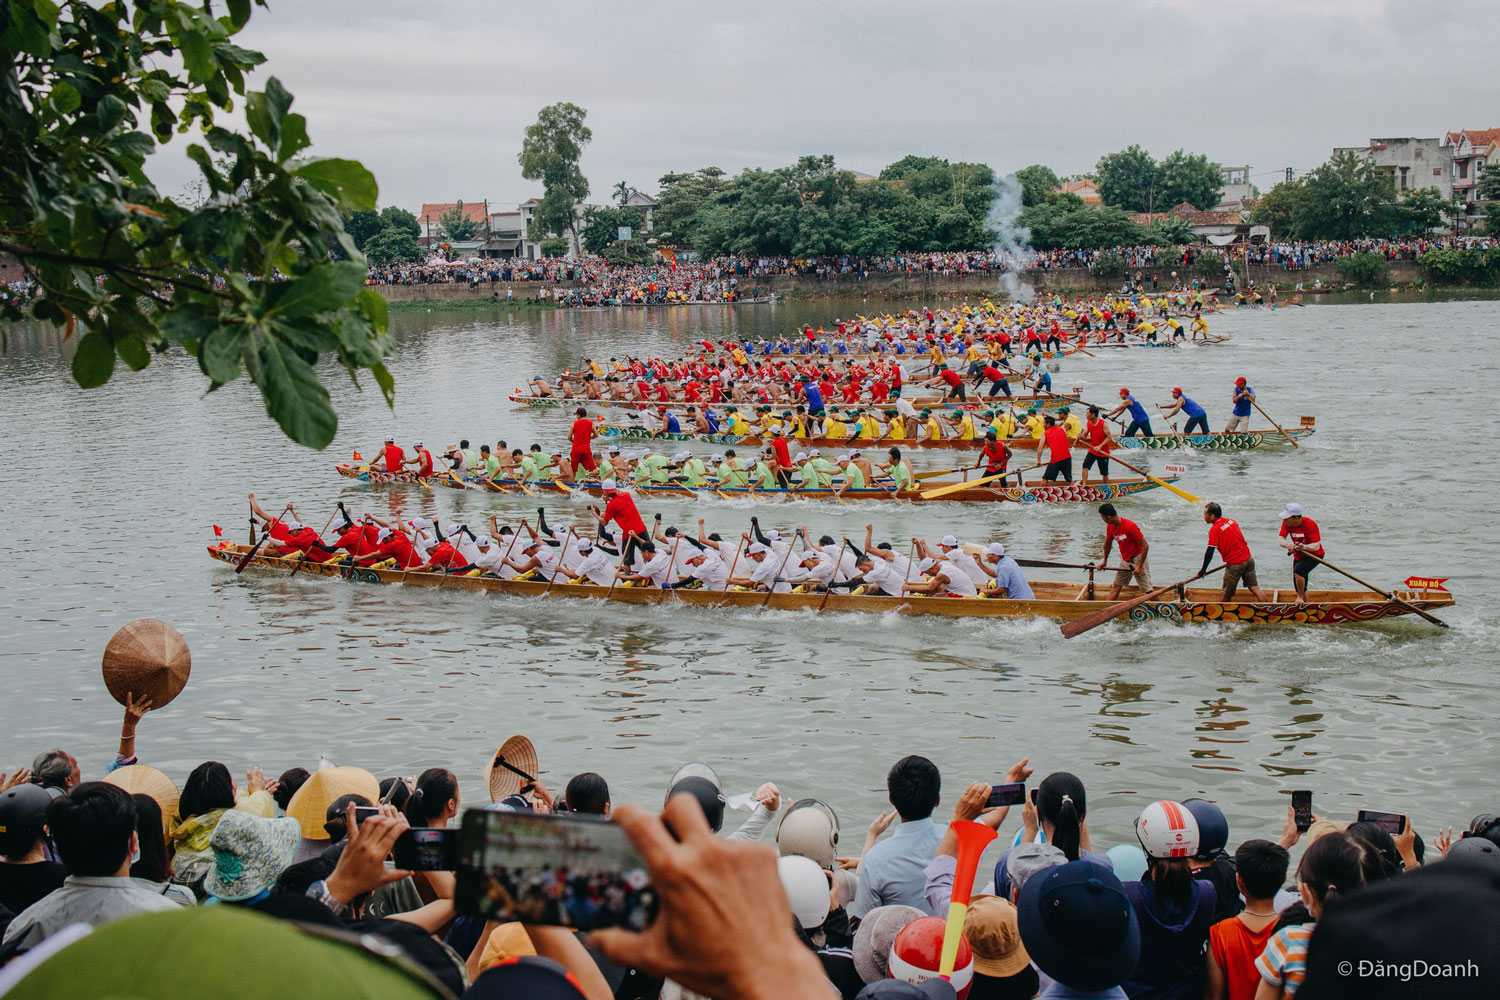 Lễ hội đua thuyền ở Huyện Lệ Thủy - Quảng Bình được tổ chức thường niên vào dịp lễ 2/9 được đông đảo bà con đến ủng hộ và cỗ vũ.